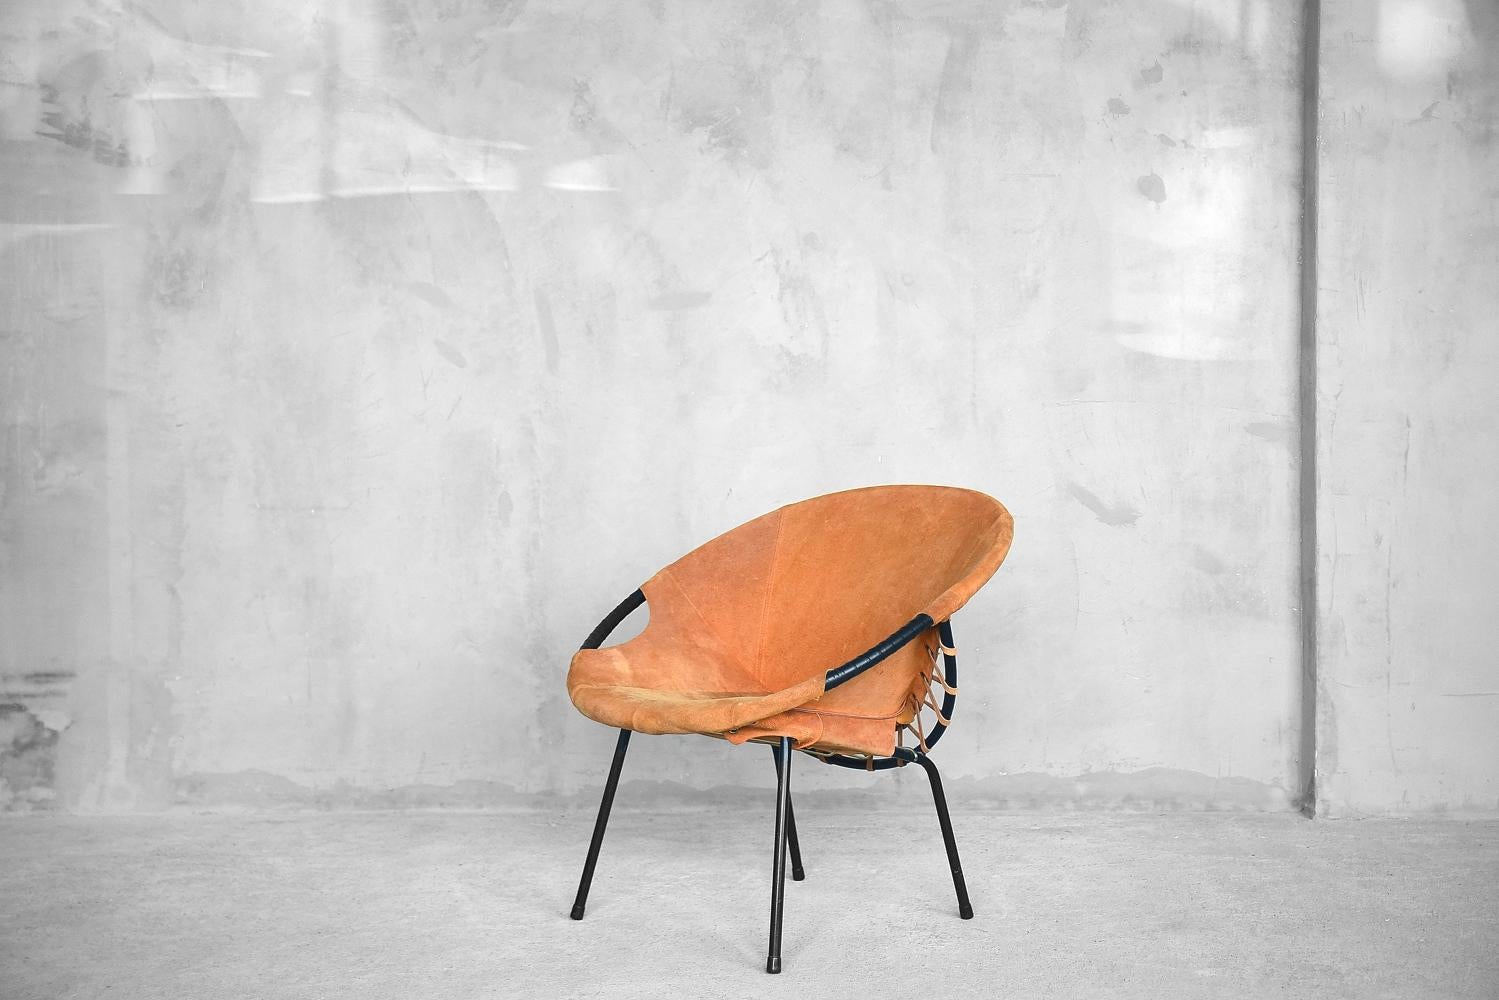 Dieser Circle Chair oder Balloon Chair wurde in den 1960er Jahren von Lusch Erzeugnis für Lusch & Co in Deutschland entworfen. Er hat einen schwarzen Metallrahmen und einen Sitz aus Wildleder. Dieser Stuhl ist in originalem Vintage-Zustand und weist